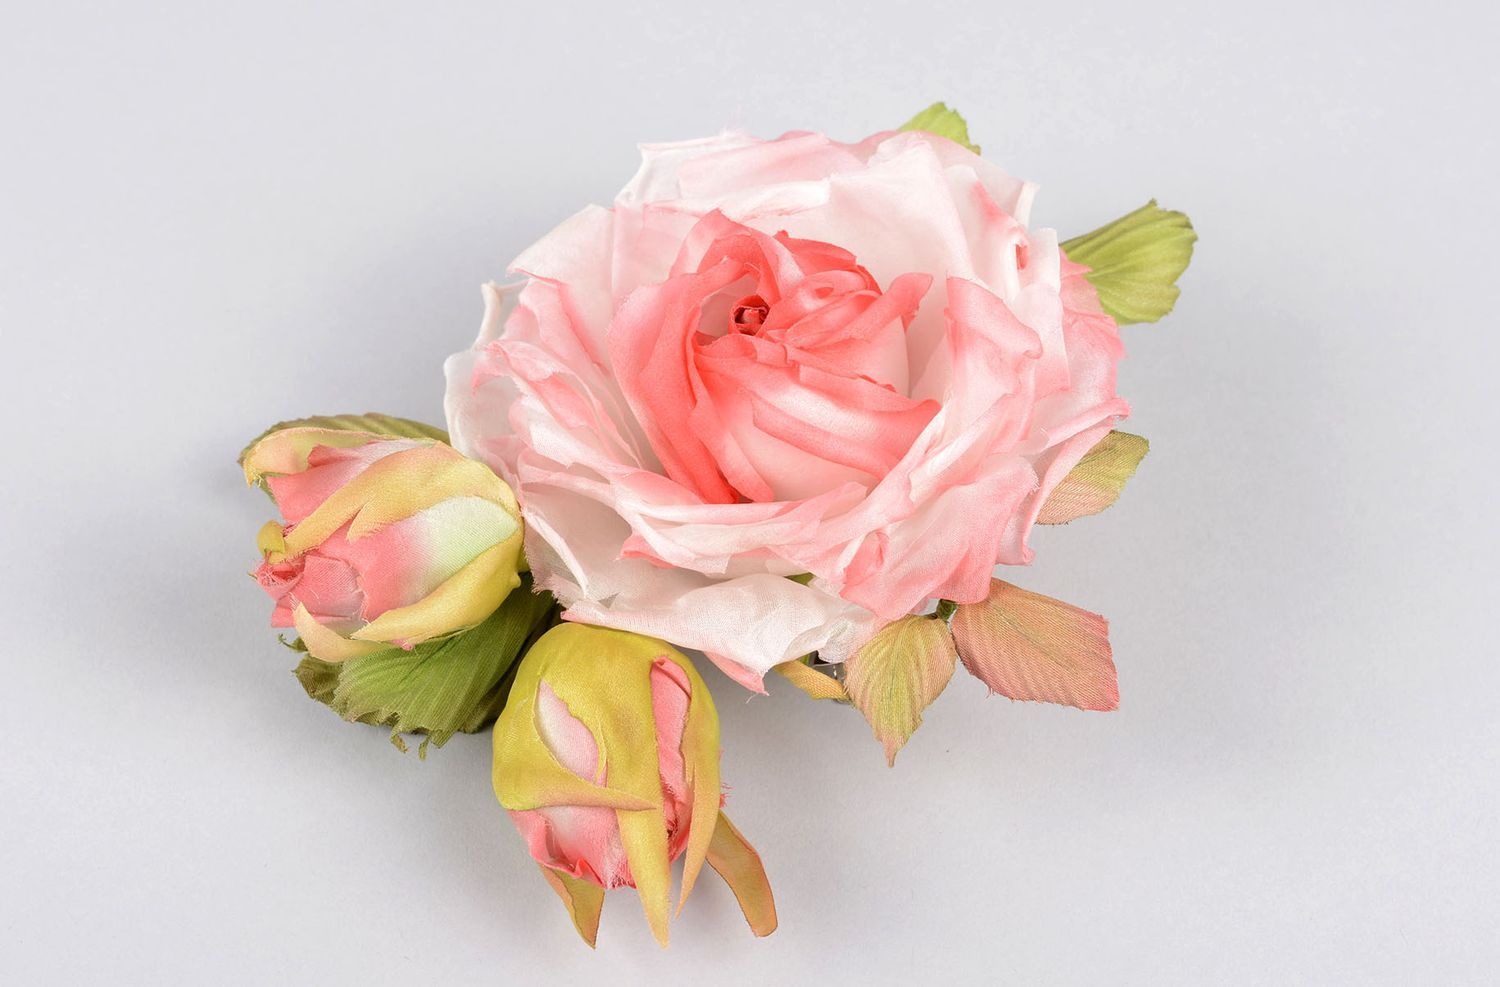 Брошь из шелка ручной работы брошь-заколка розовая роза авторская бижутерия фото 1